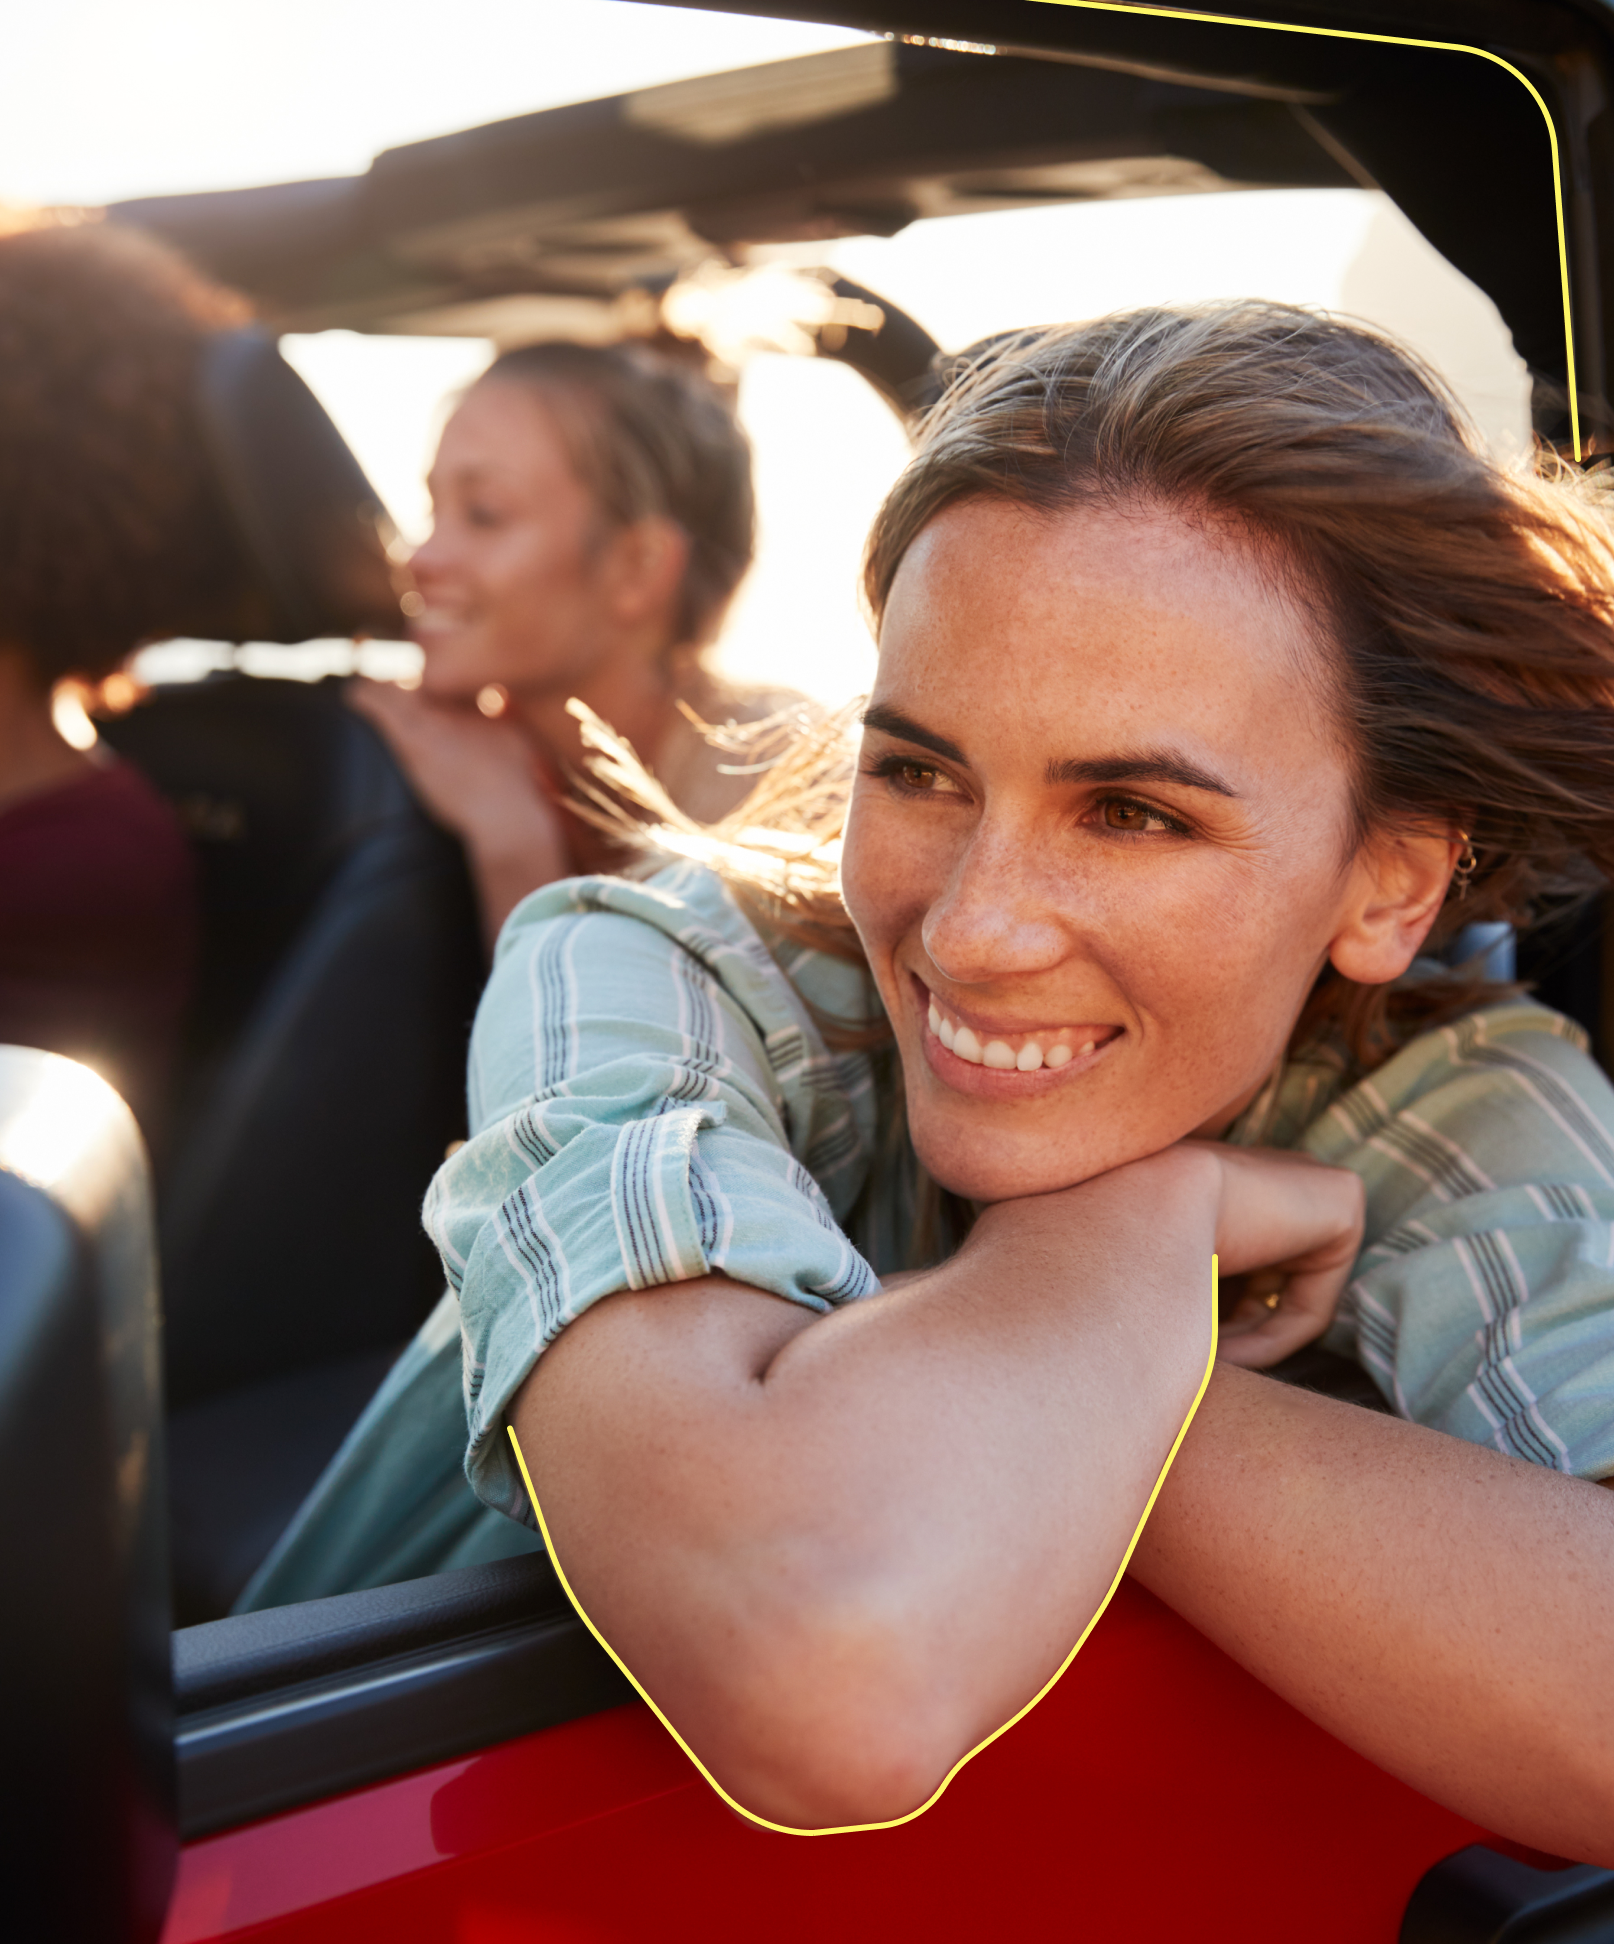 Eine Frau lehnt sich an das Fenster eines fahrenden Autos und lächelt breit, als der Wind ihr entgegenweht